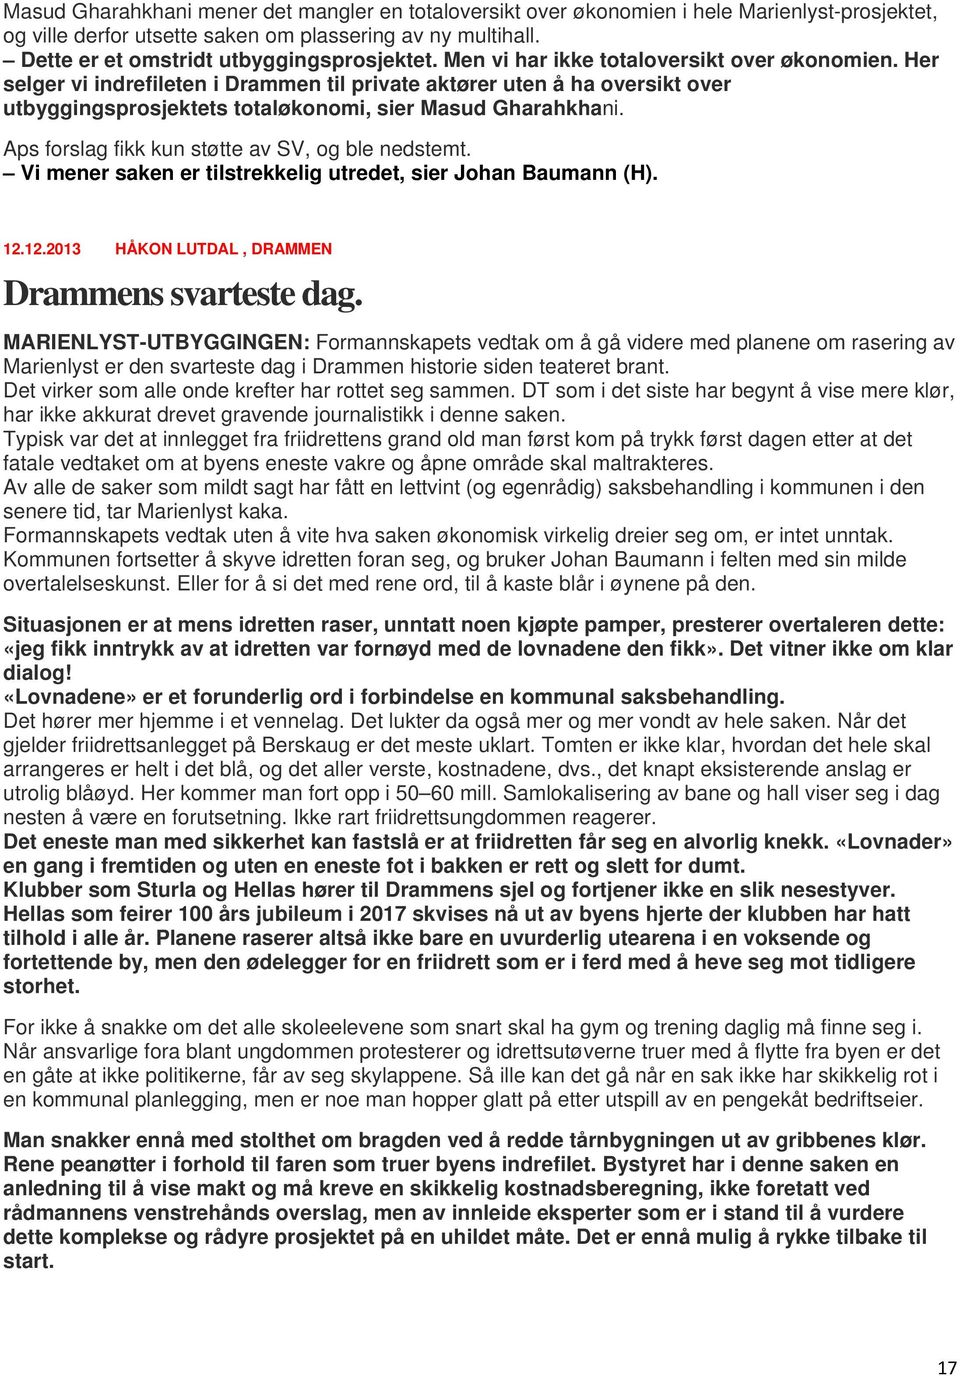 Her selger vi indrefileten i Drammen til private aktører uten å ha oversikt over utbyggingsprosjektets totaløkonomi, sier Masud Gharahkhani. Aps forslag fikk kun støtte av SV, og ble nedstemt.